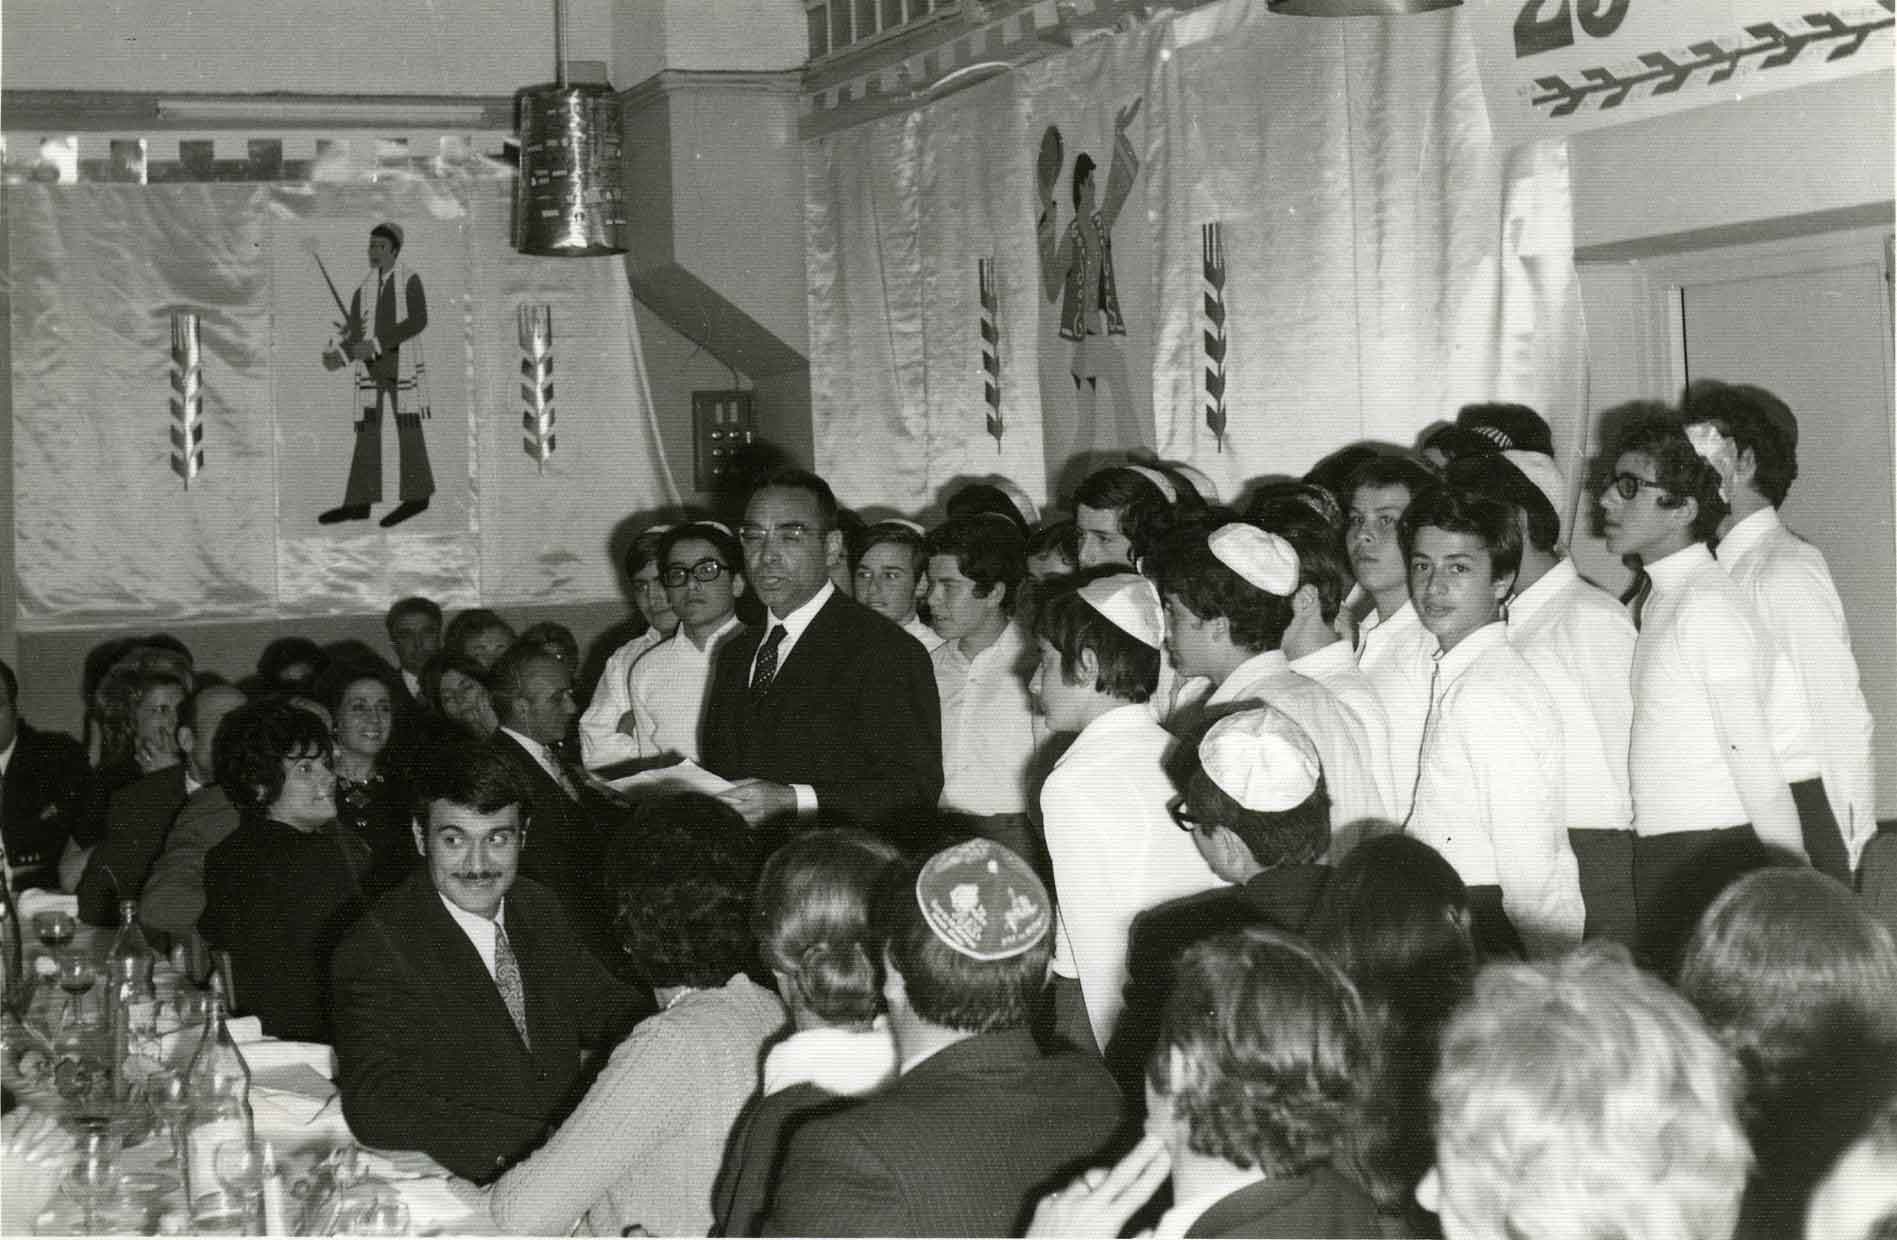 25ème anniversaire de l’Ecole Normale Hébraïque (ENH) de Casablanca.Dîner d’ouverture des parents d’élèves du dimanche 14 mars 1971 dans le réfectoire décoré de l’école .Allocution de M. E. Sebban, directeur de l’E.N.H.Derrière lui : la chrorale de l’école (Photo AIU)